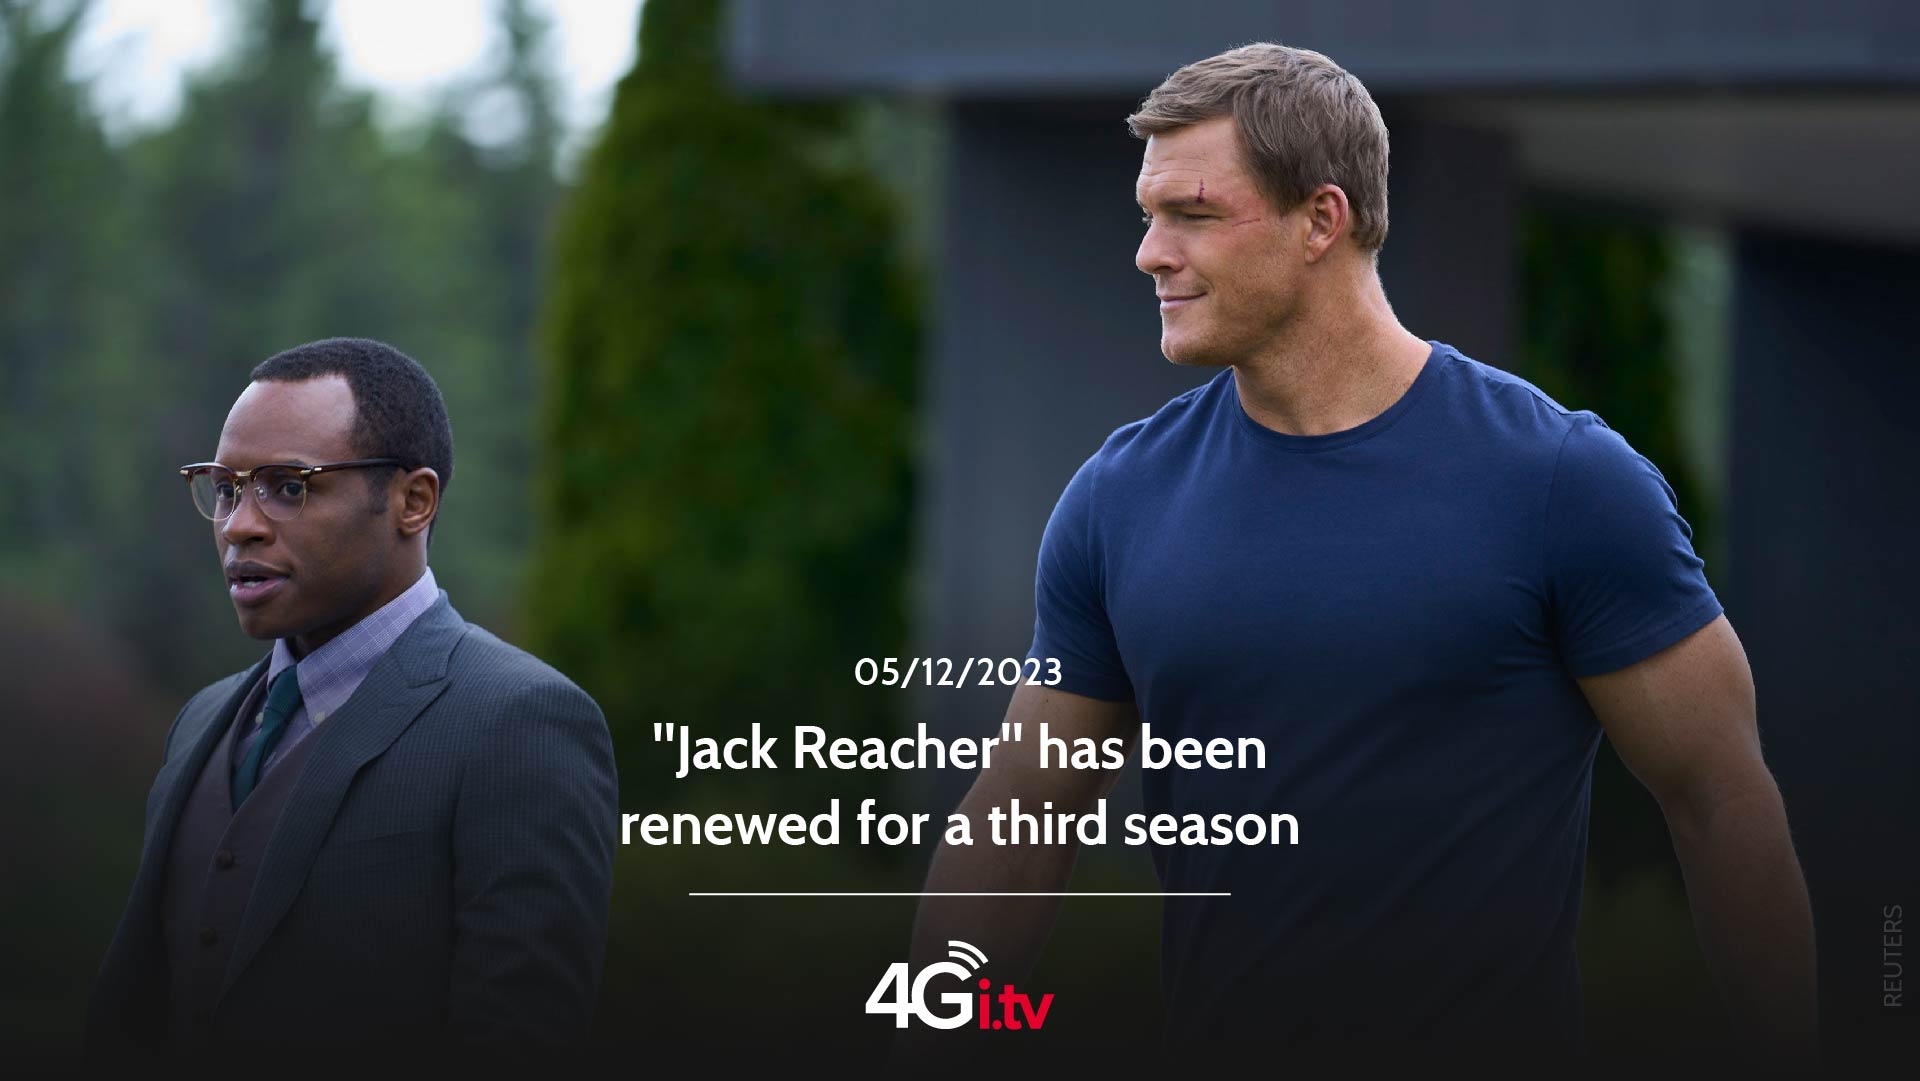 Подробнее о статье “Jack Reacher” has been renewed for a third season